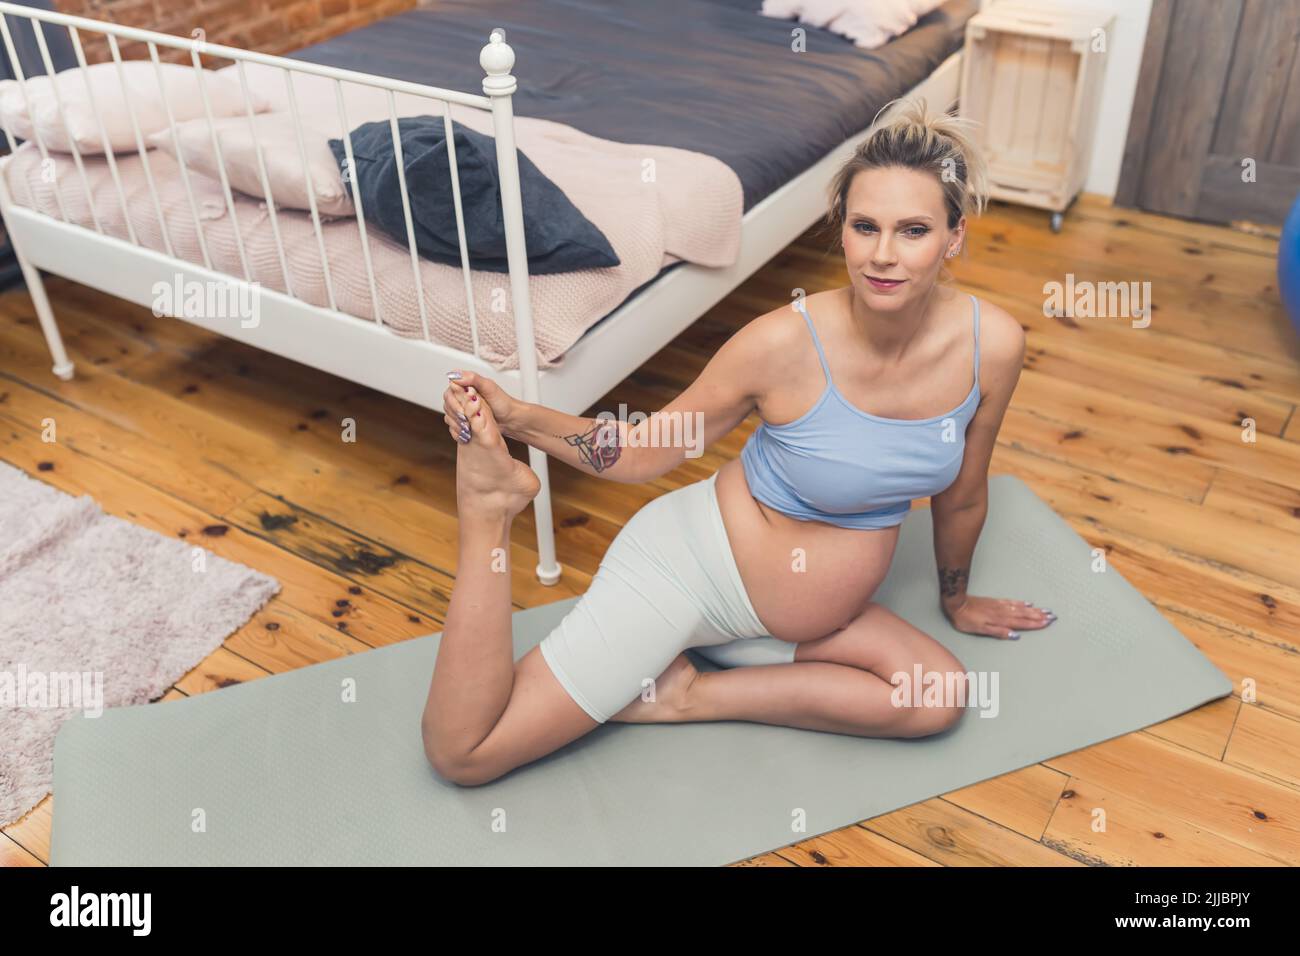 Stretching durante la gravidanza concetto. Donna incinta europea bionda di mezza età che allunga la coscia mentre si siede su un tappeto yoga. Scatto al coperto. Foto di alta qualità Foto Stock